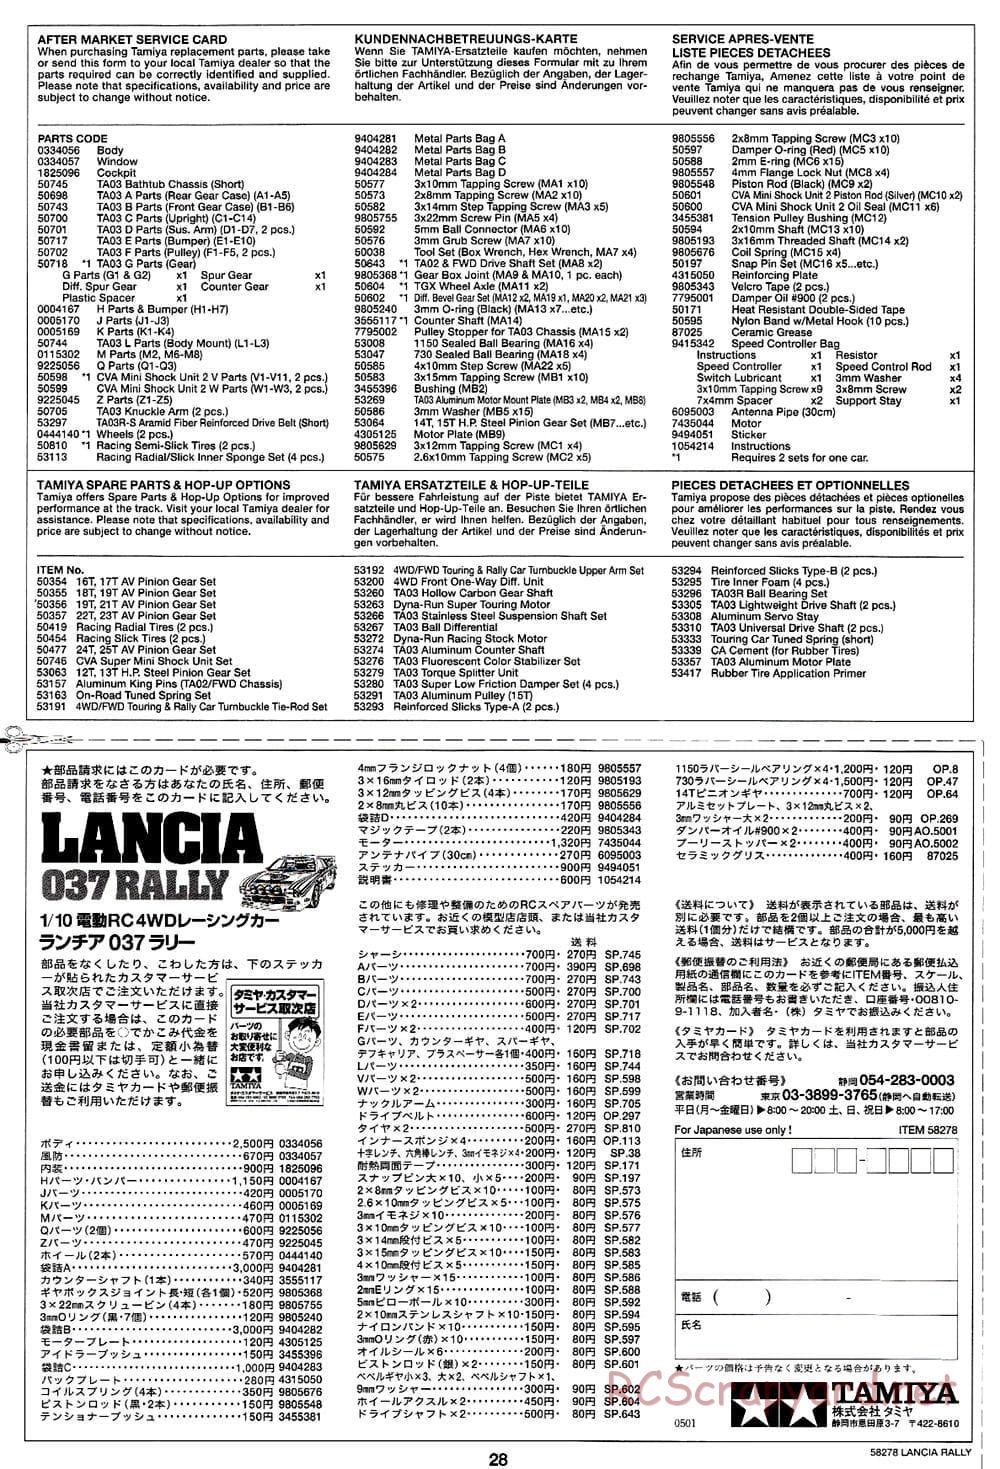 Tamiya - Lancia 037 Rally - TA-03RS Chassis - Manual - Page 28